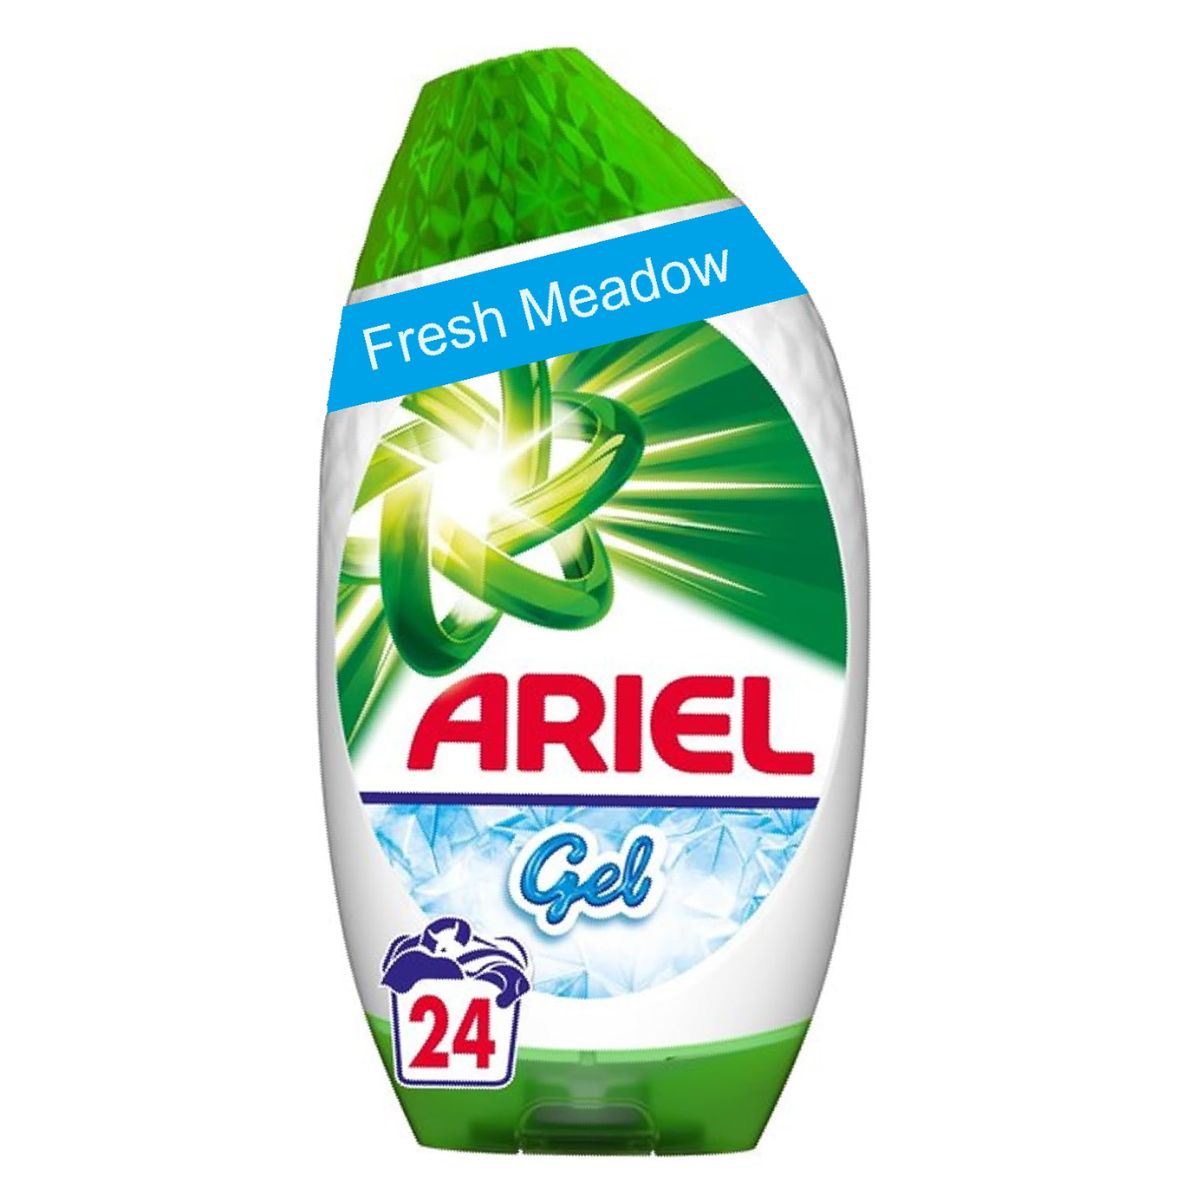 Ariel - Cold Wash Gel Detergent - 24 Washes, 250ml.